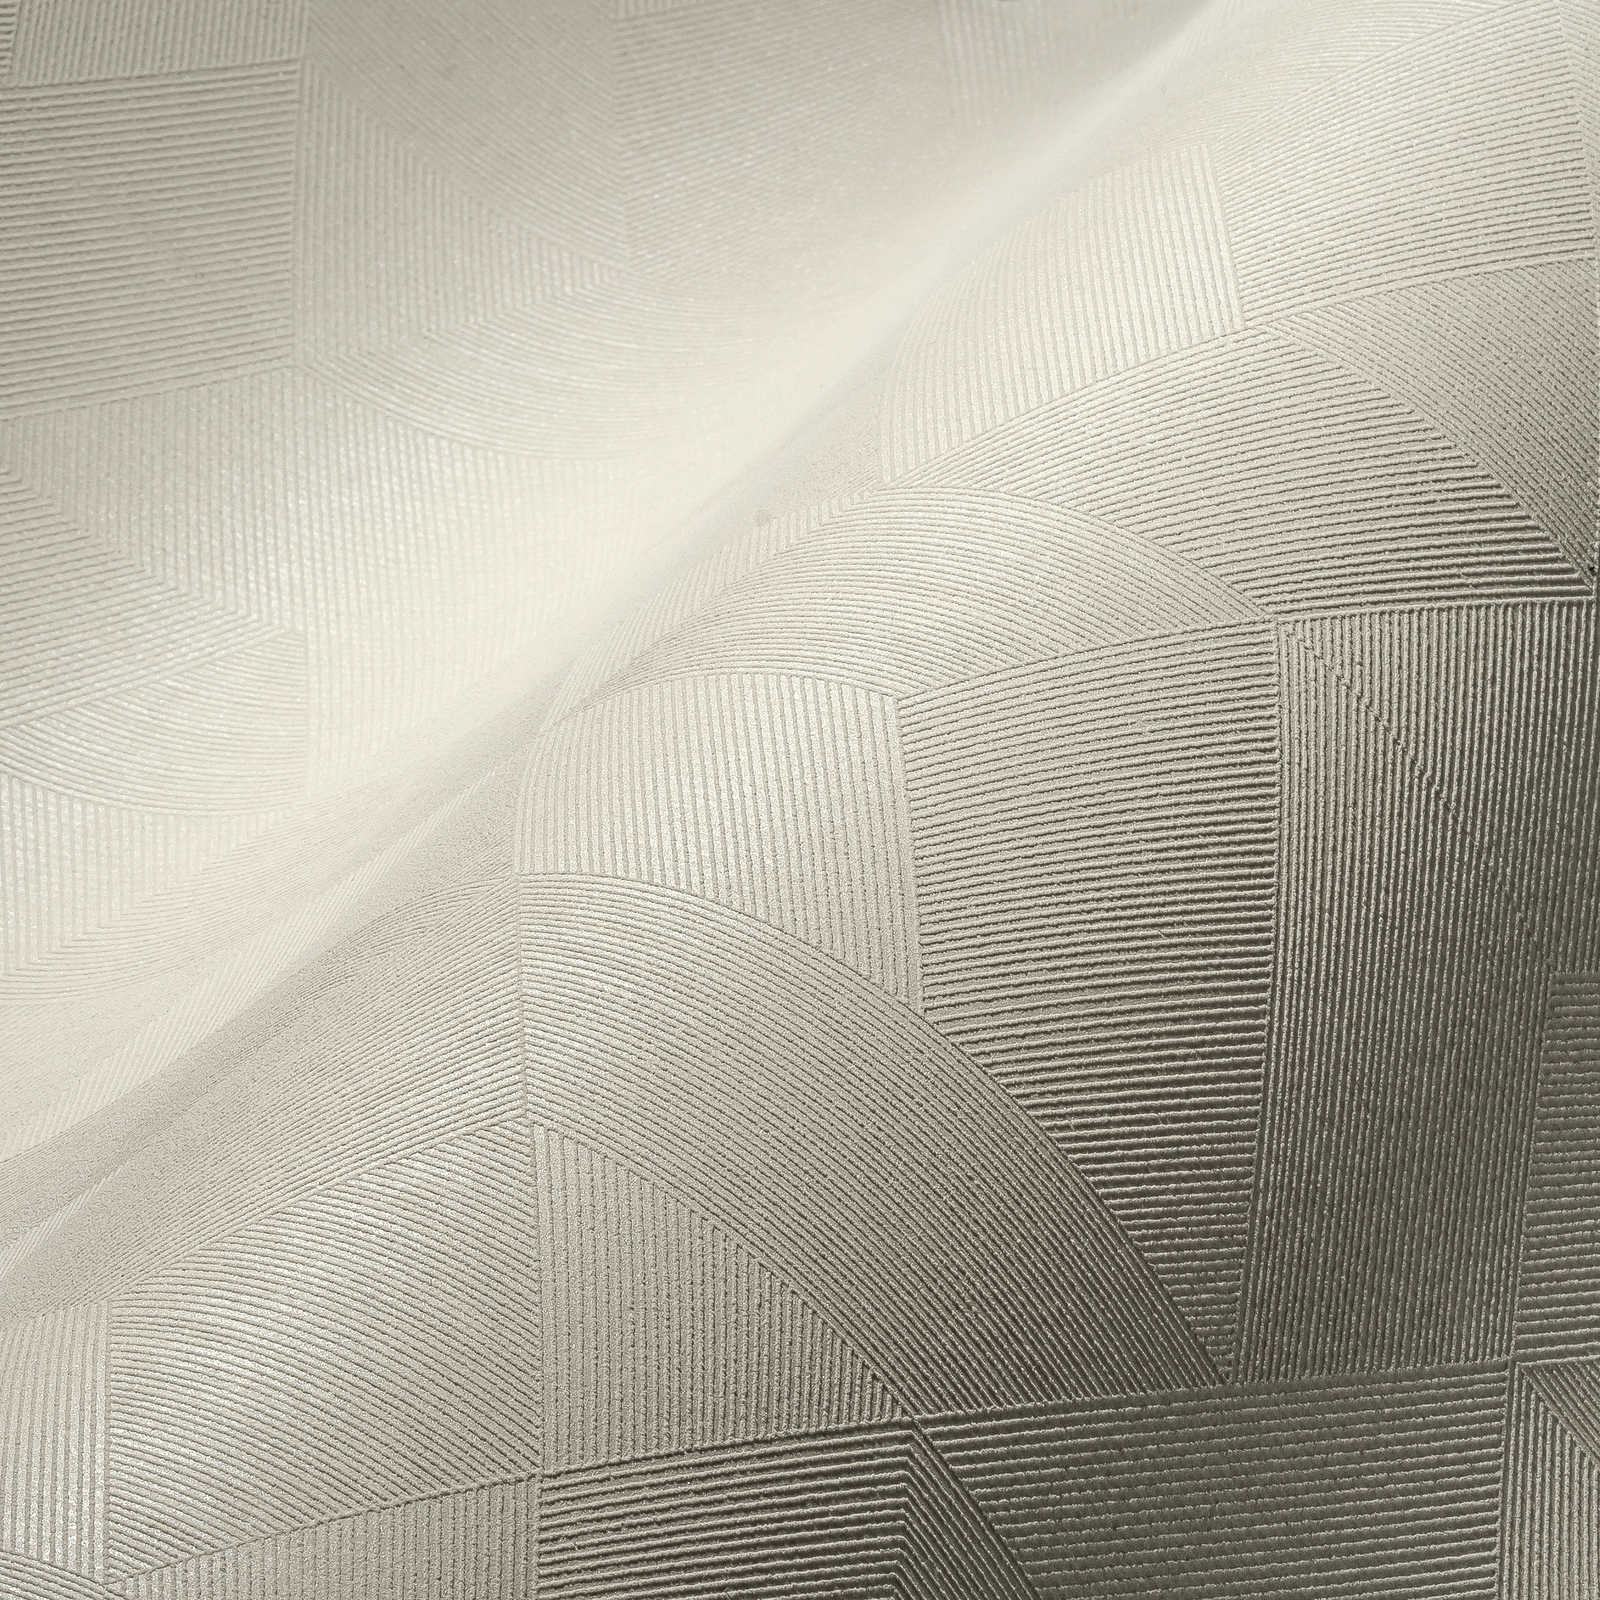             Cremeweise Tapete mit Ton-in-Ton Muster & Schimmer-Effekt – Weiß
        